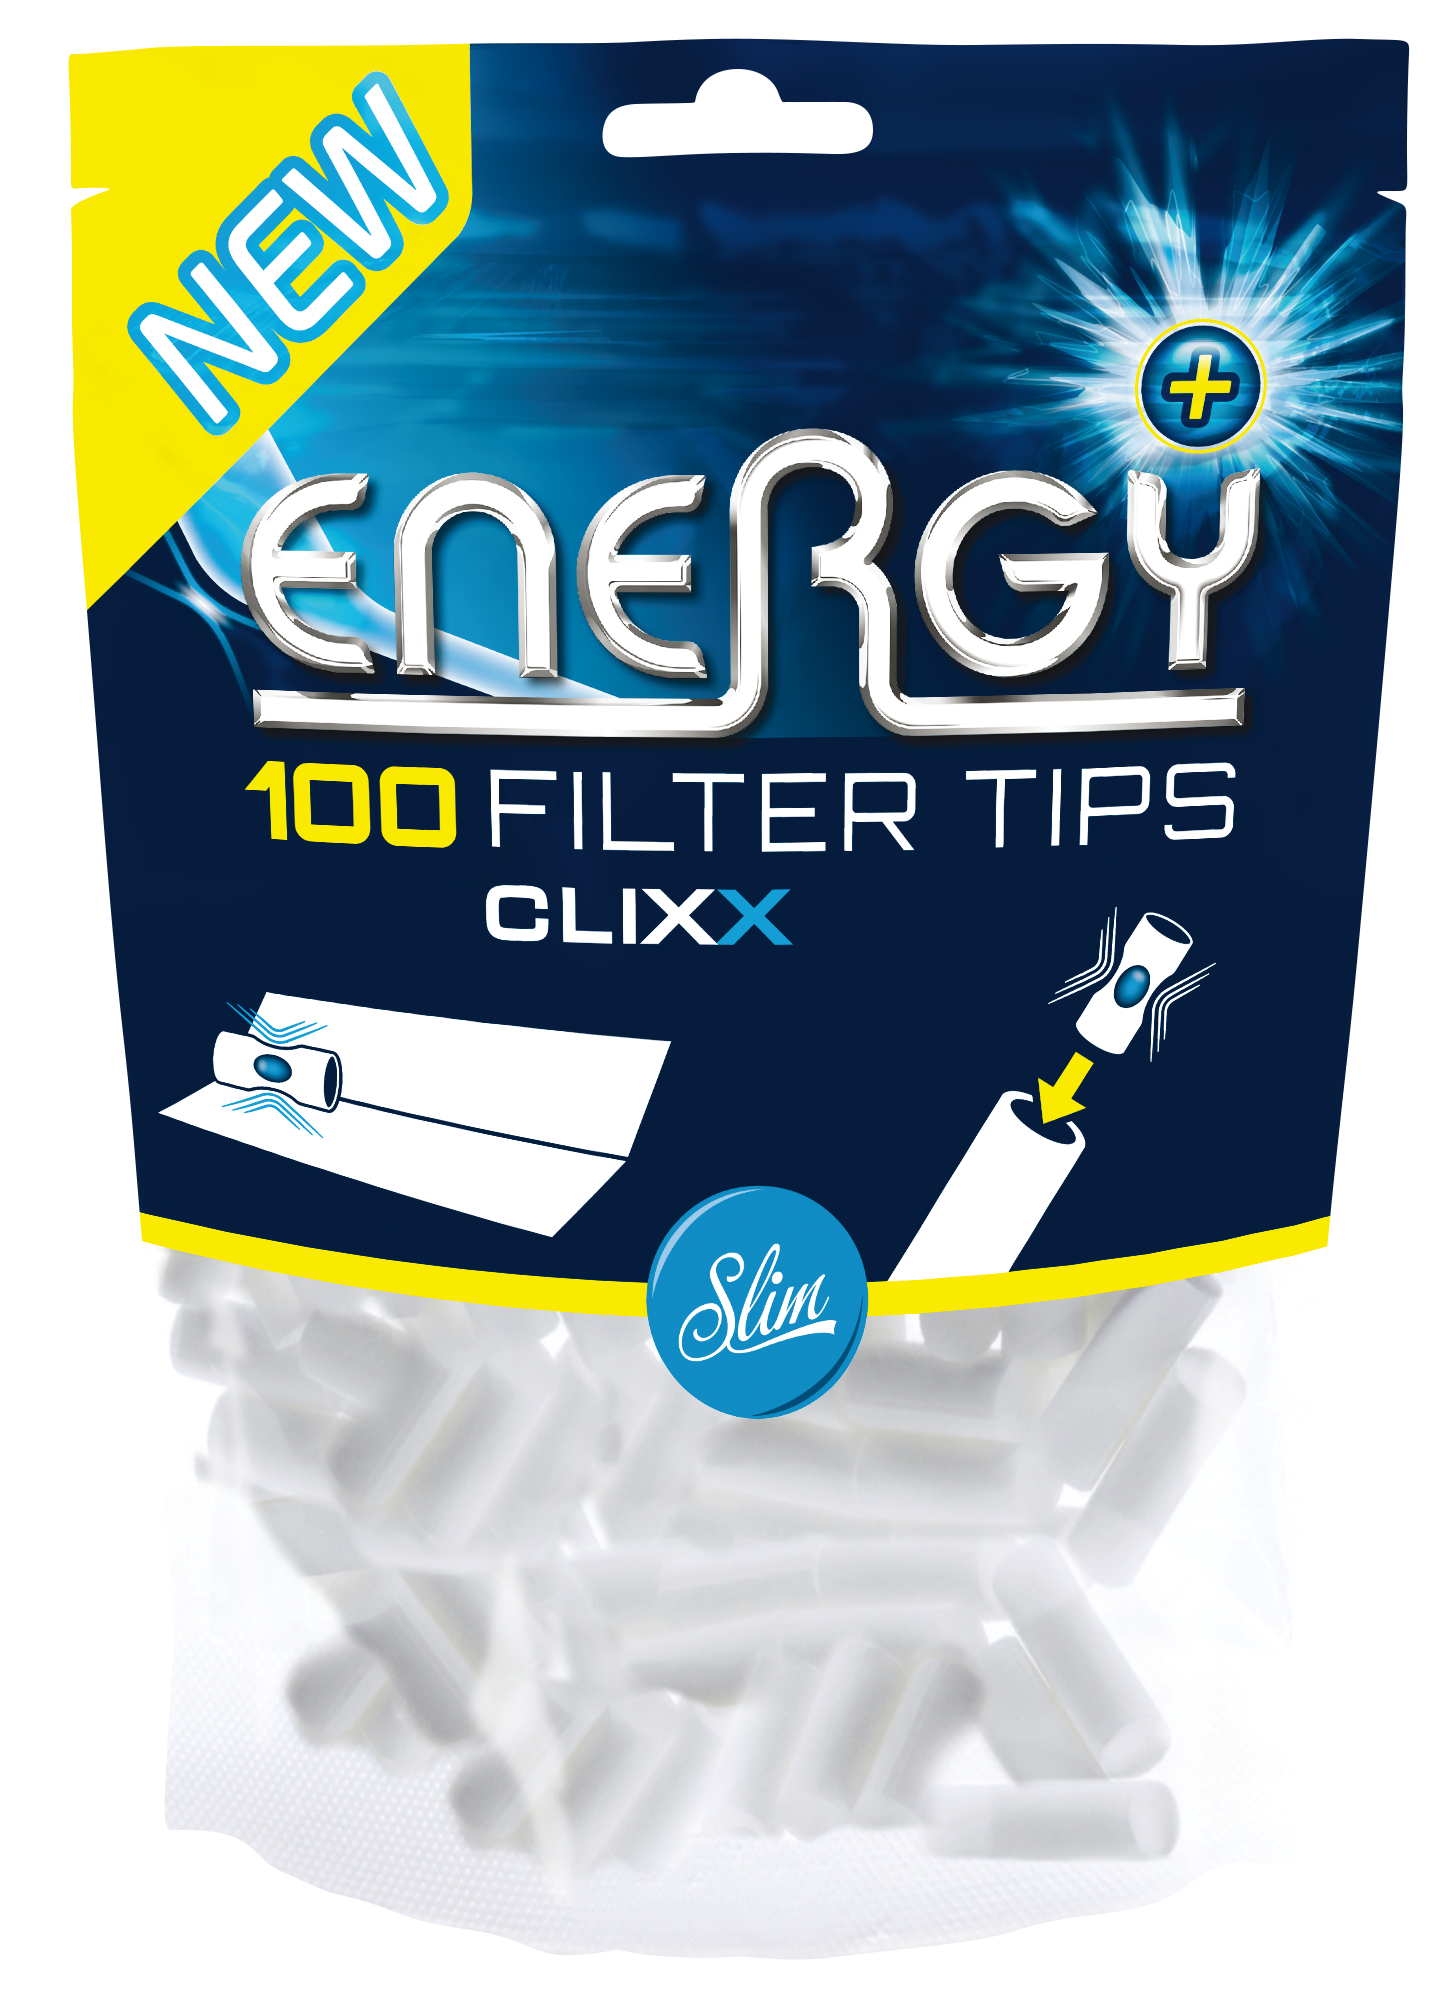 Energy+ CLIXX Filter Tips jetzt kaufen